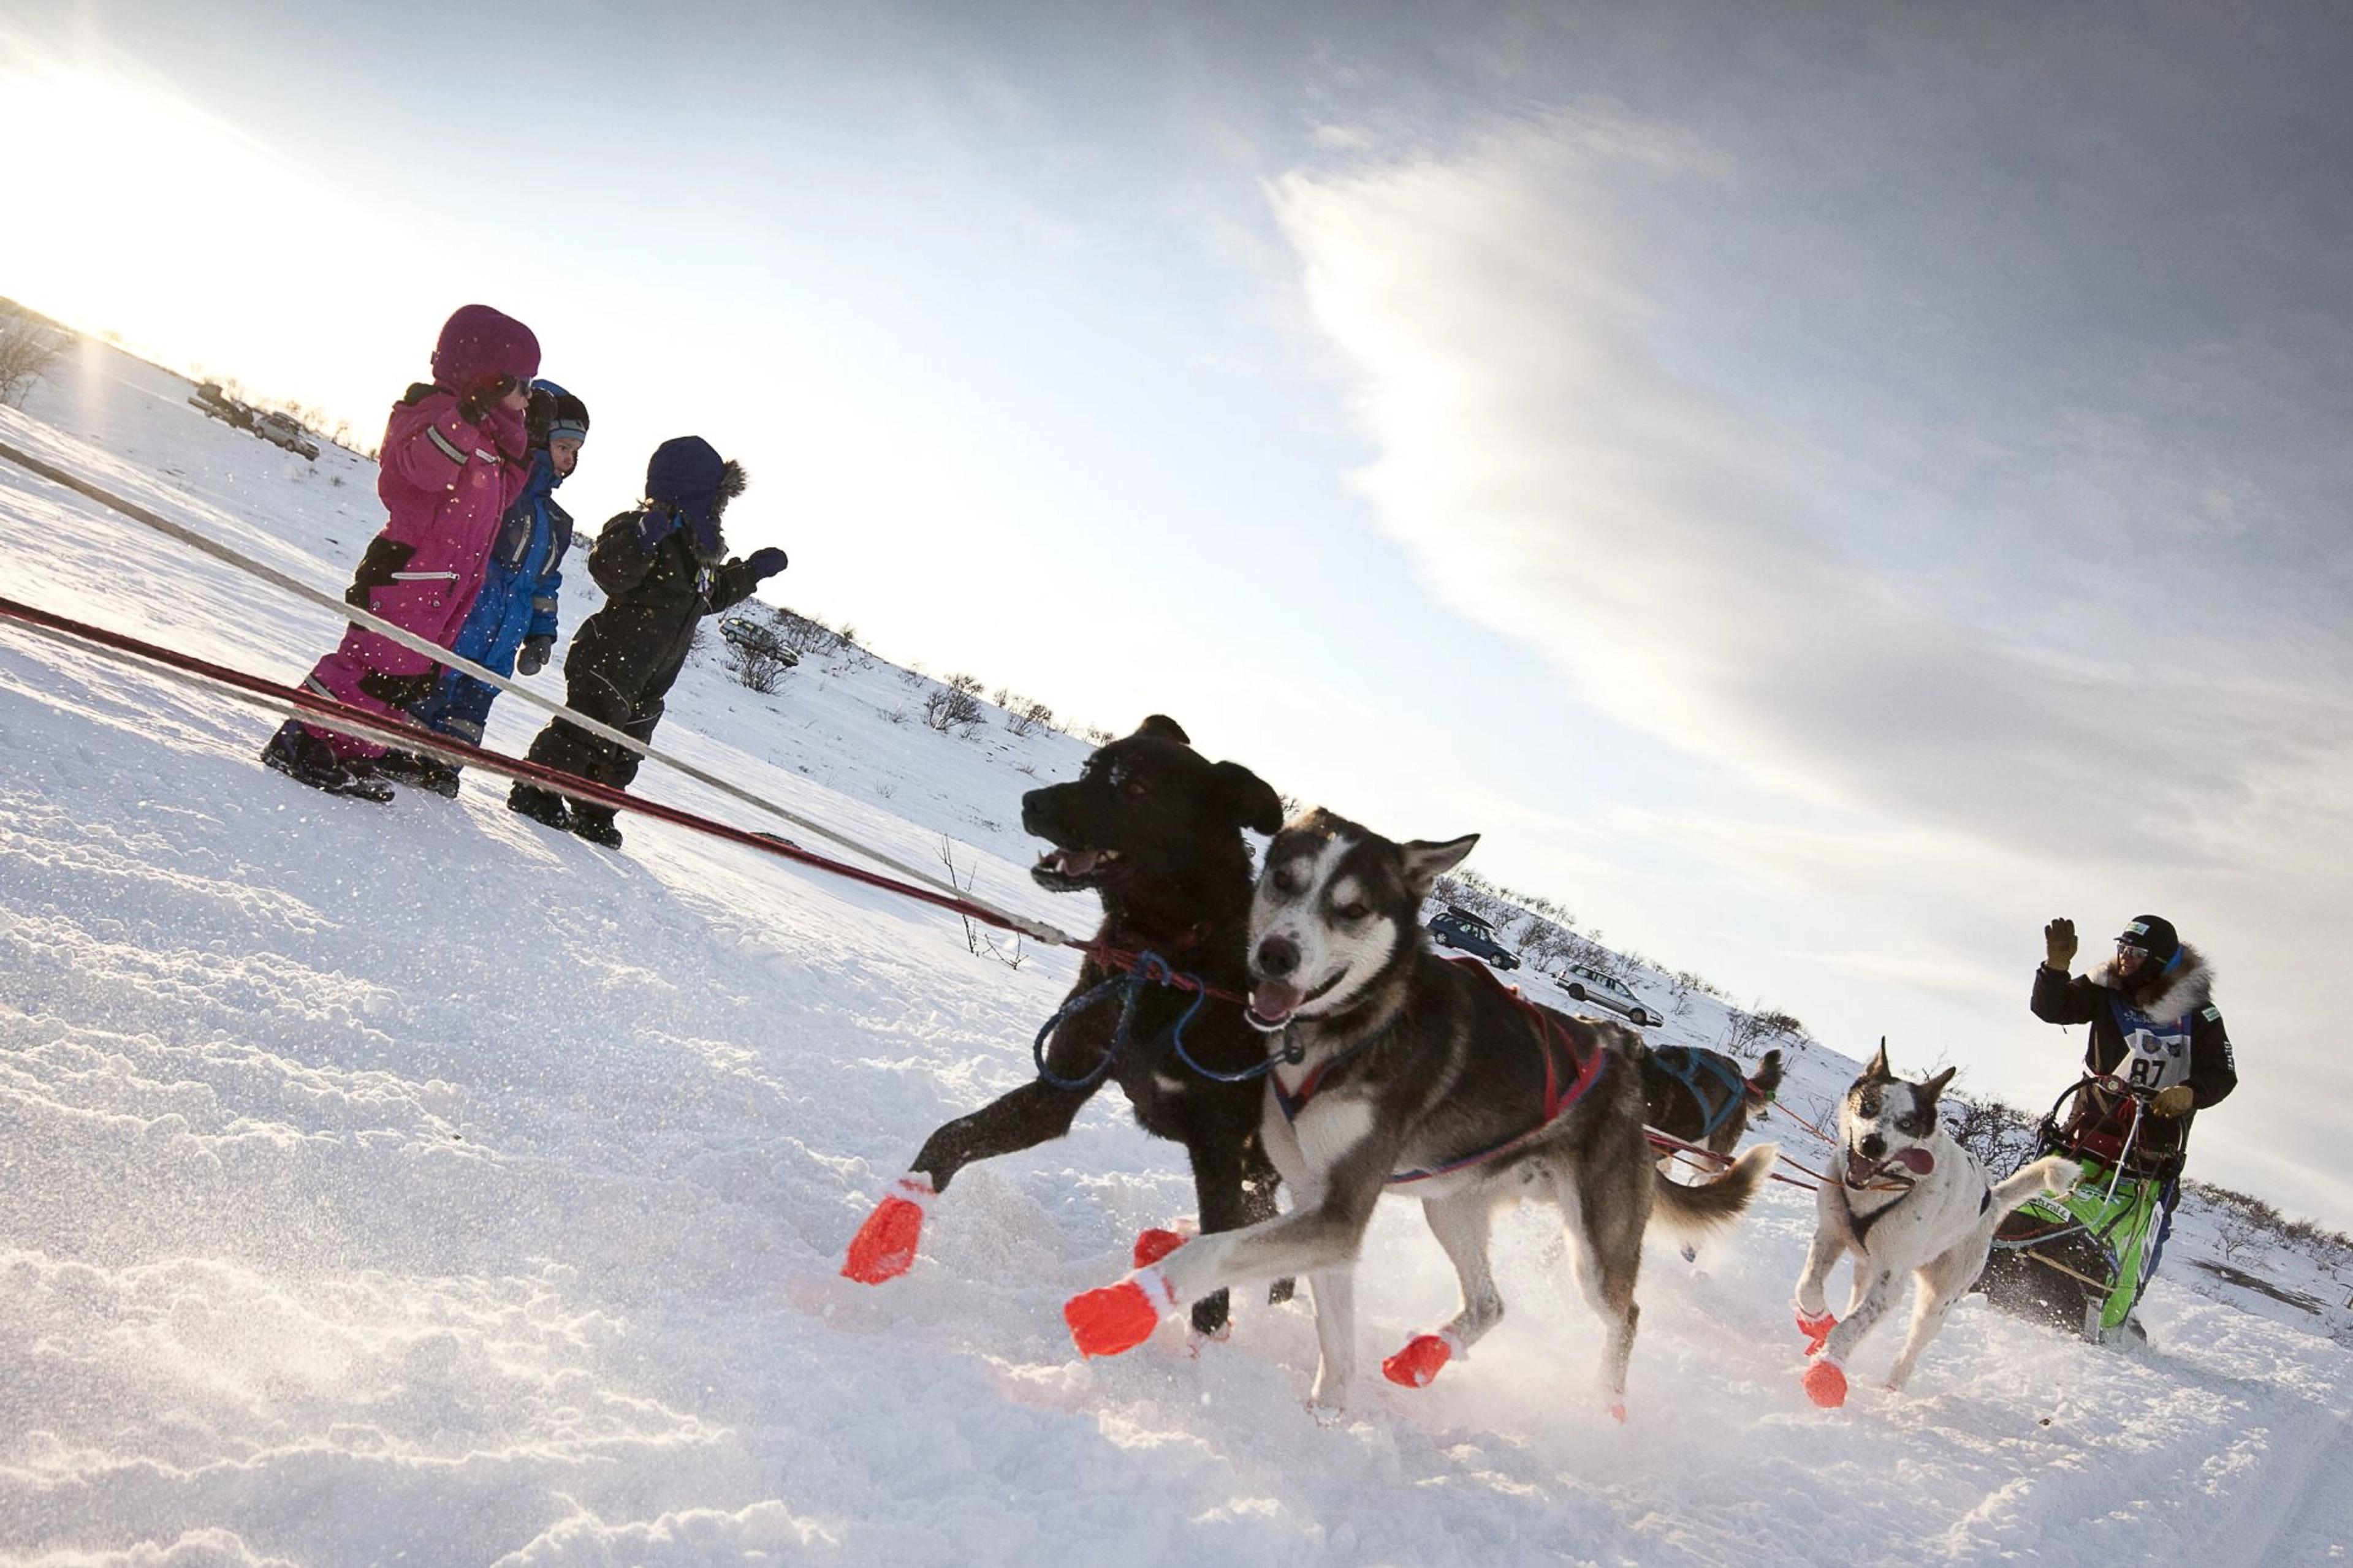 Finnmarksløpet - dog sledding in Norway